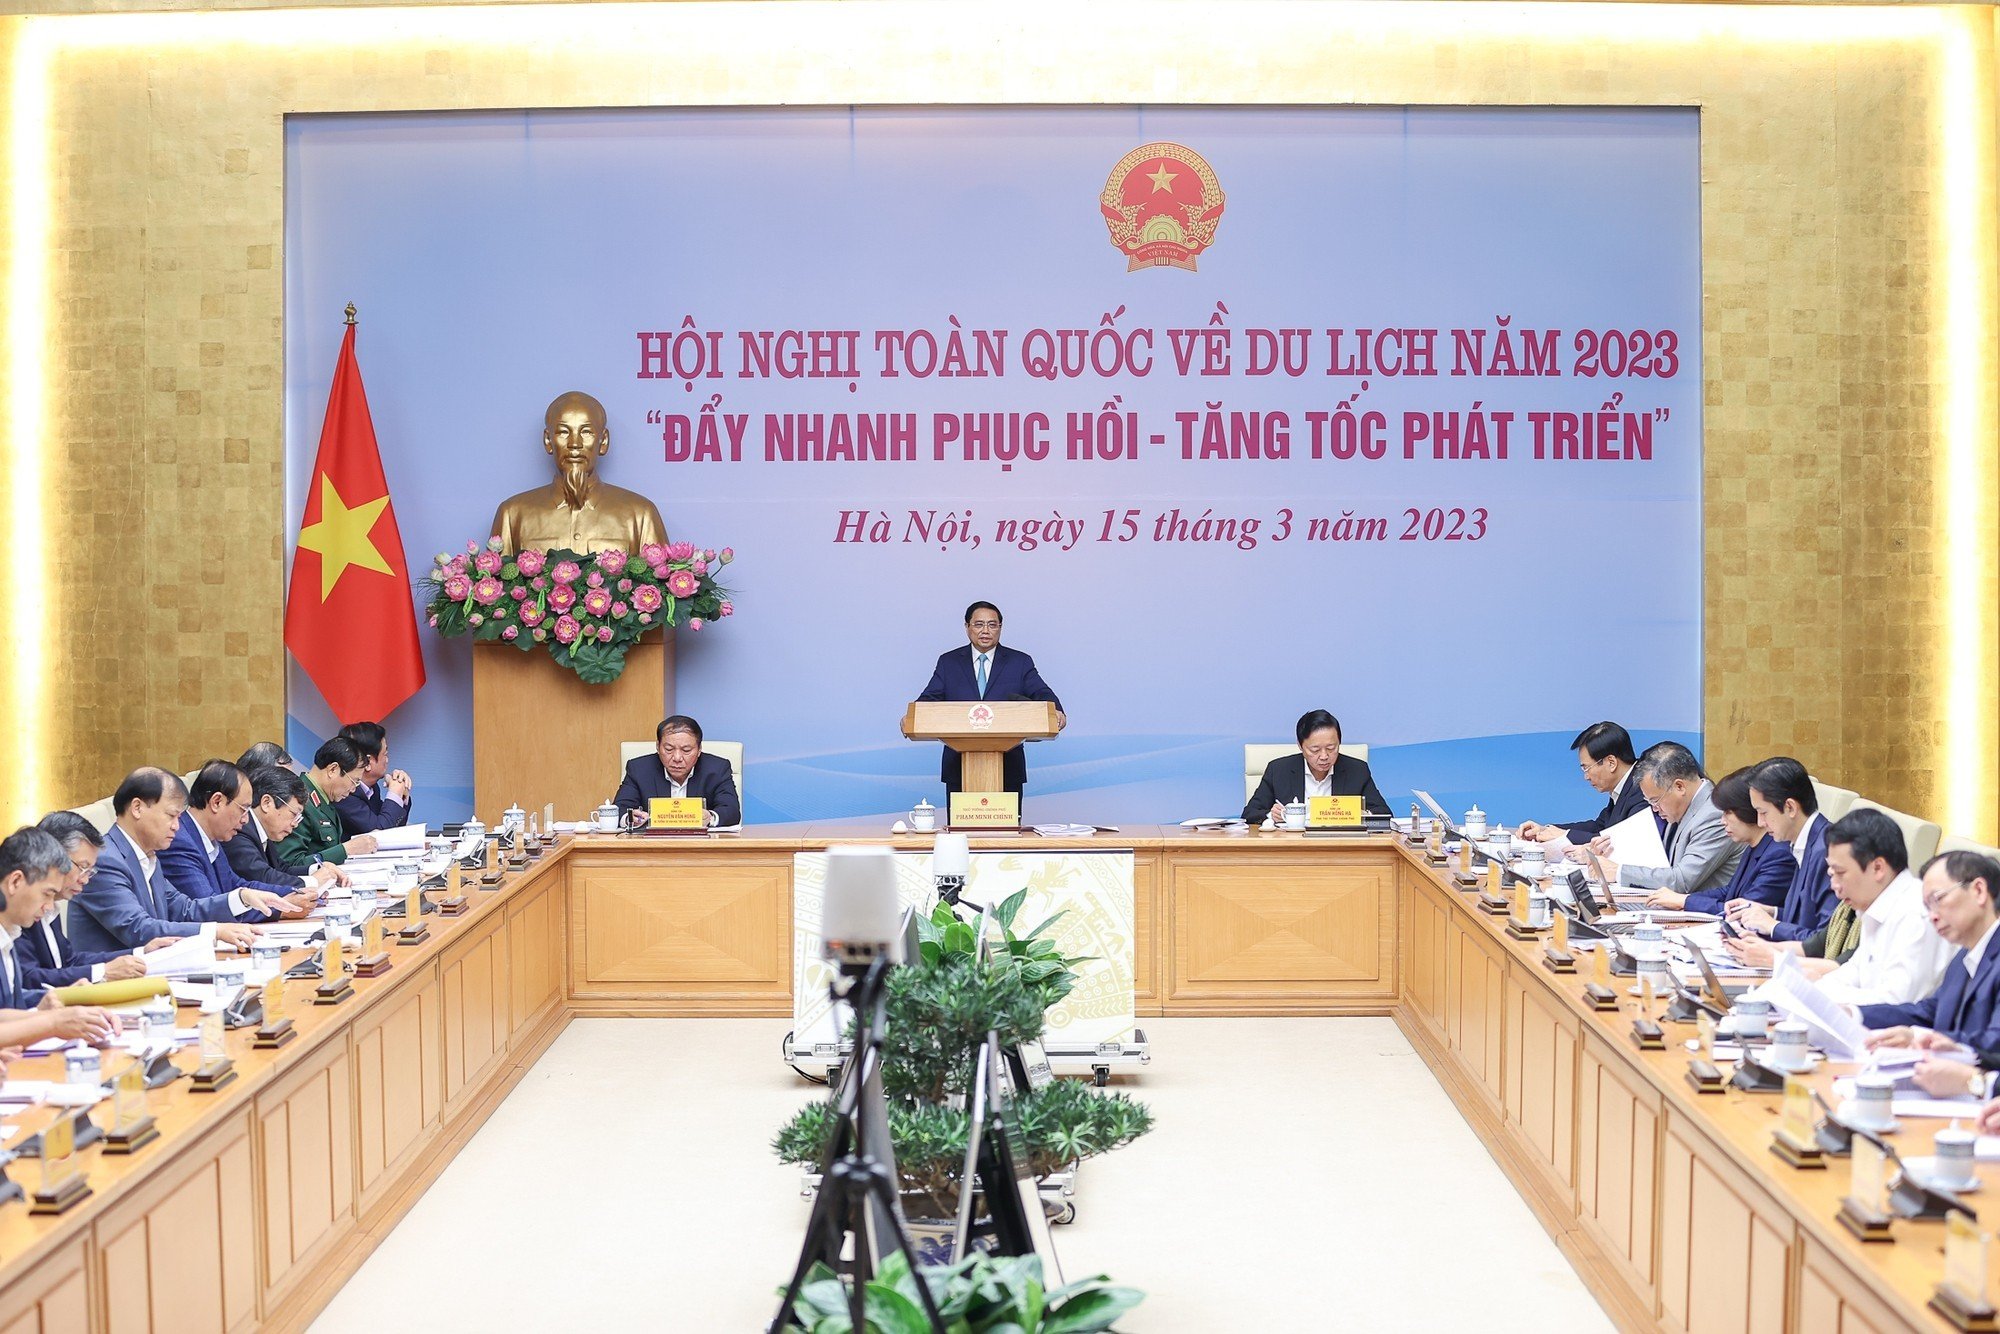 Du lịch Việt Nam - Tự hào chặng đường 63 năm xây dựng và phát triển - Ảnh 16.